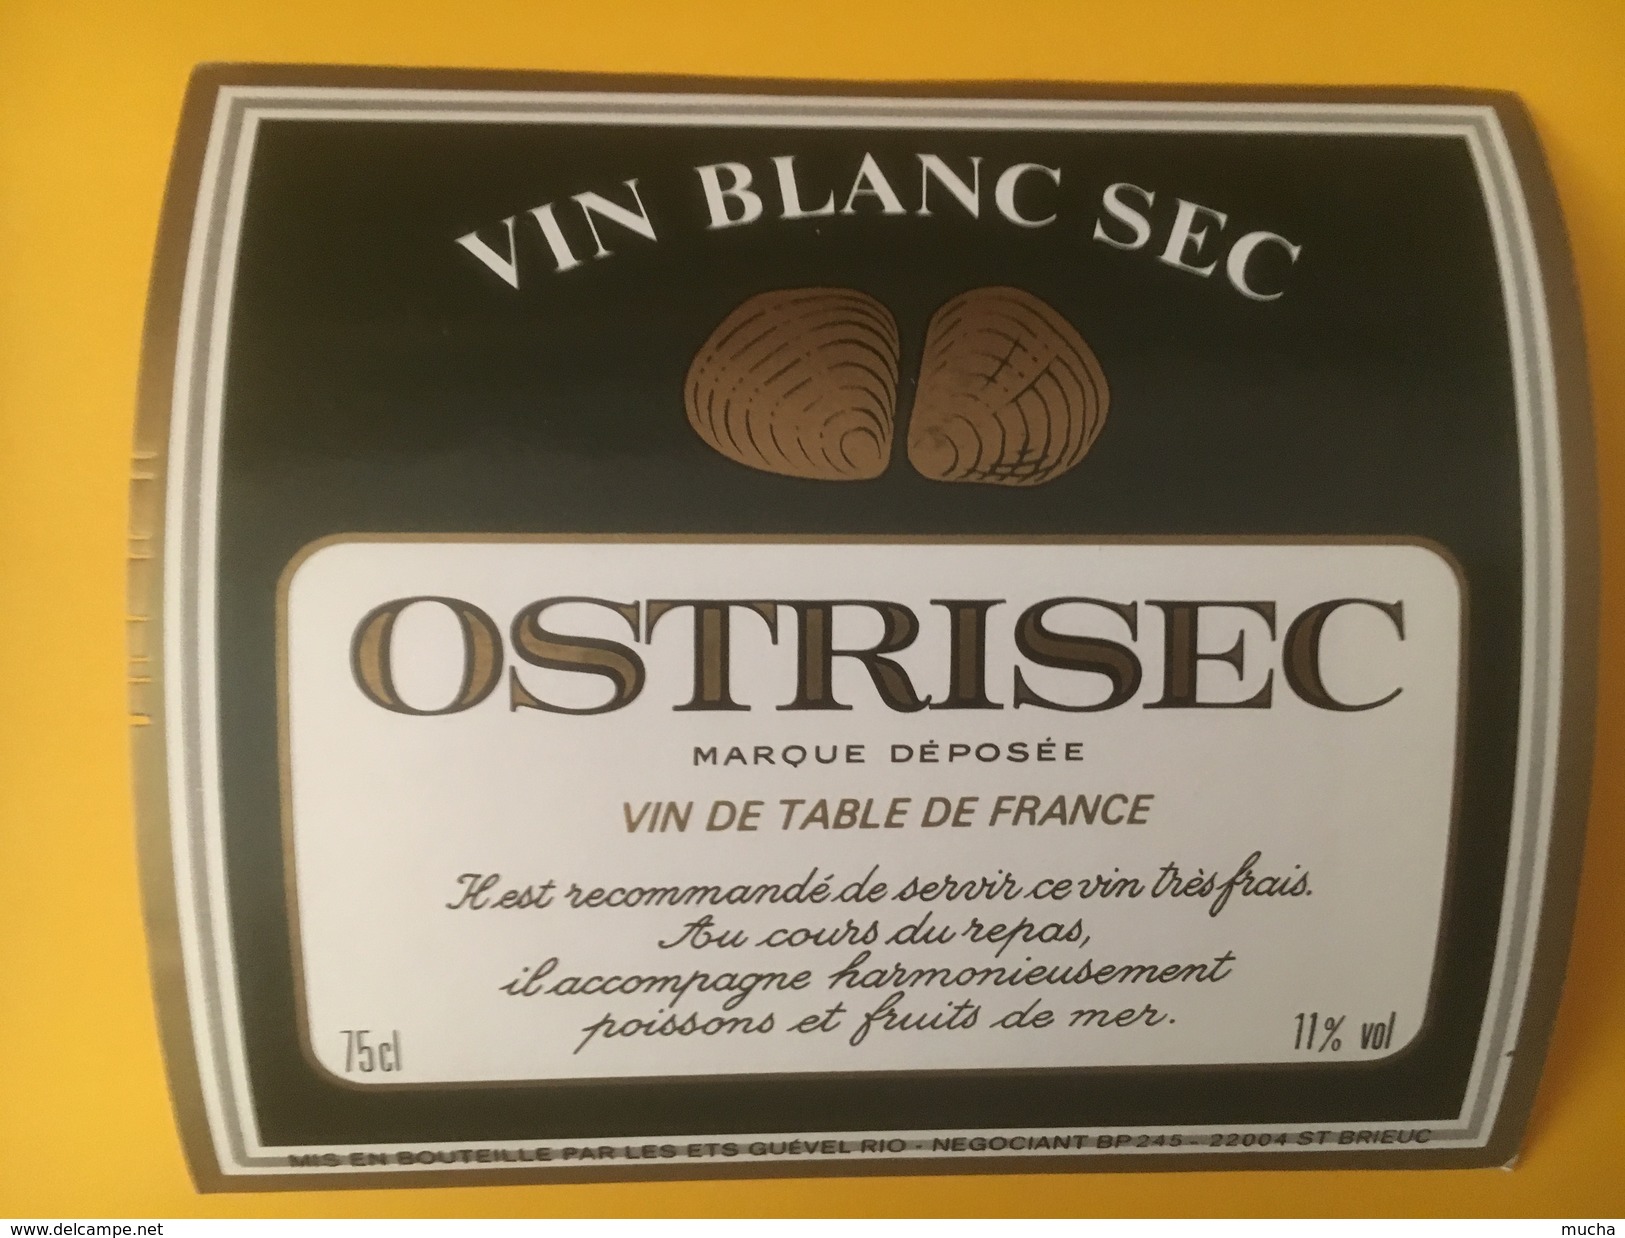 3332 - Ostrisec Vin Blanc Sec - Blancs